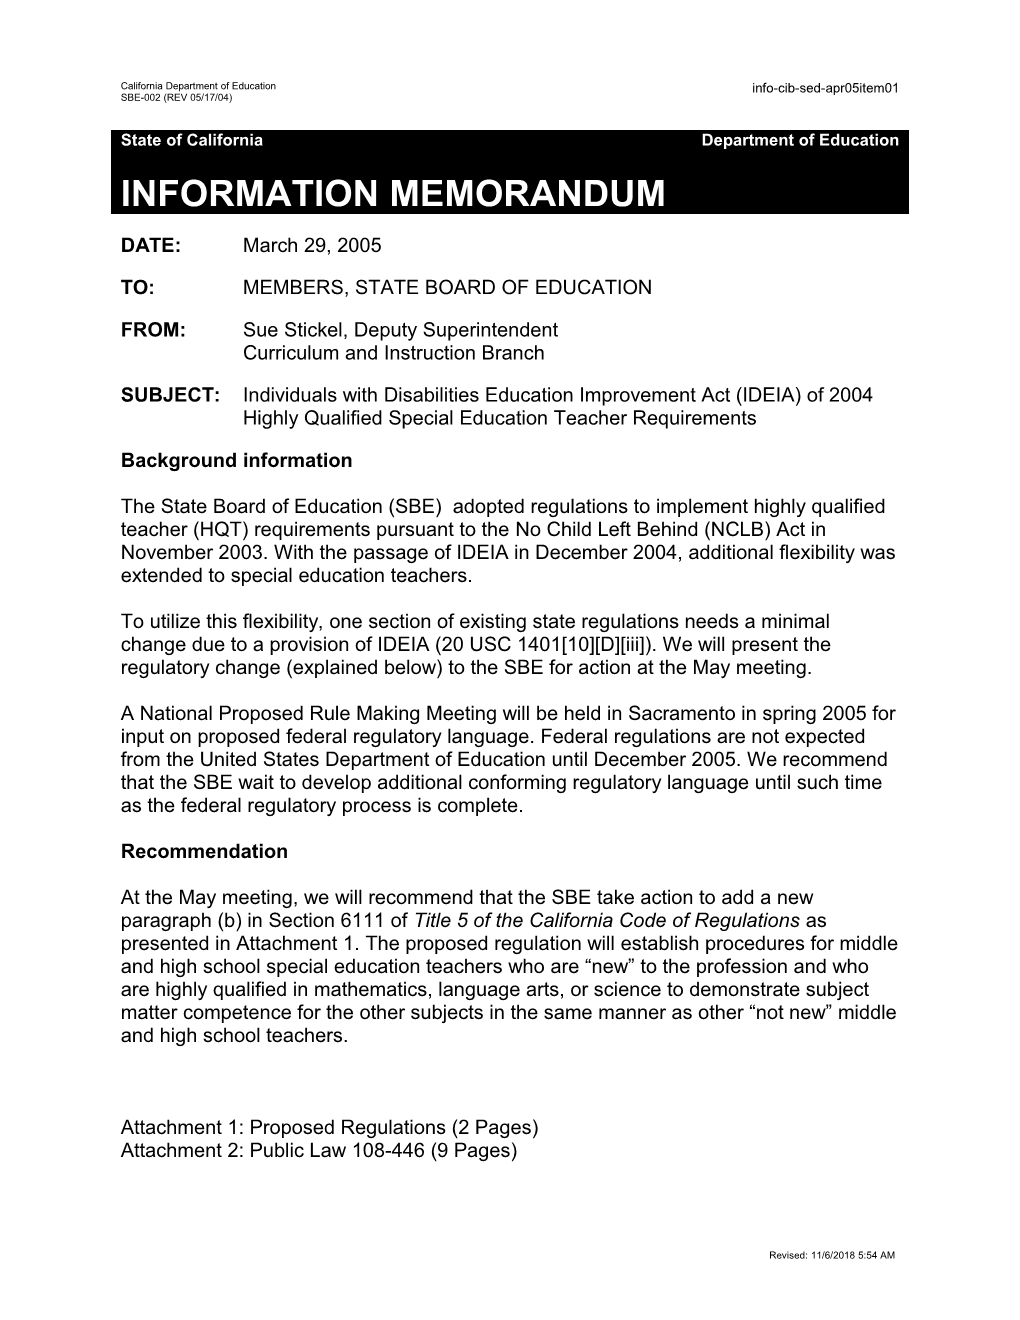 SED Item 01 April 2005 - Information Memorandum (CA State Board of Education)